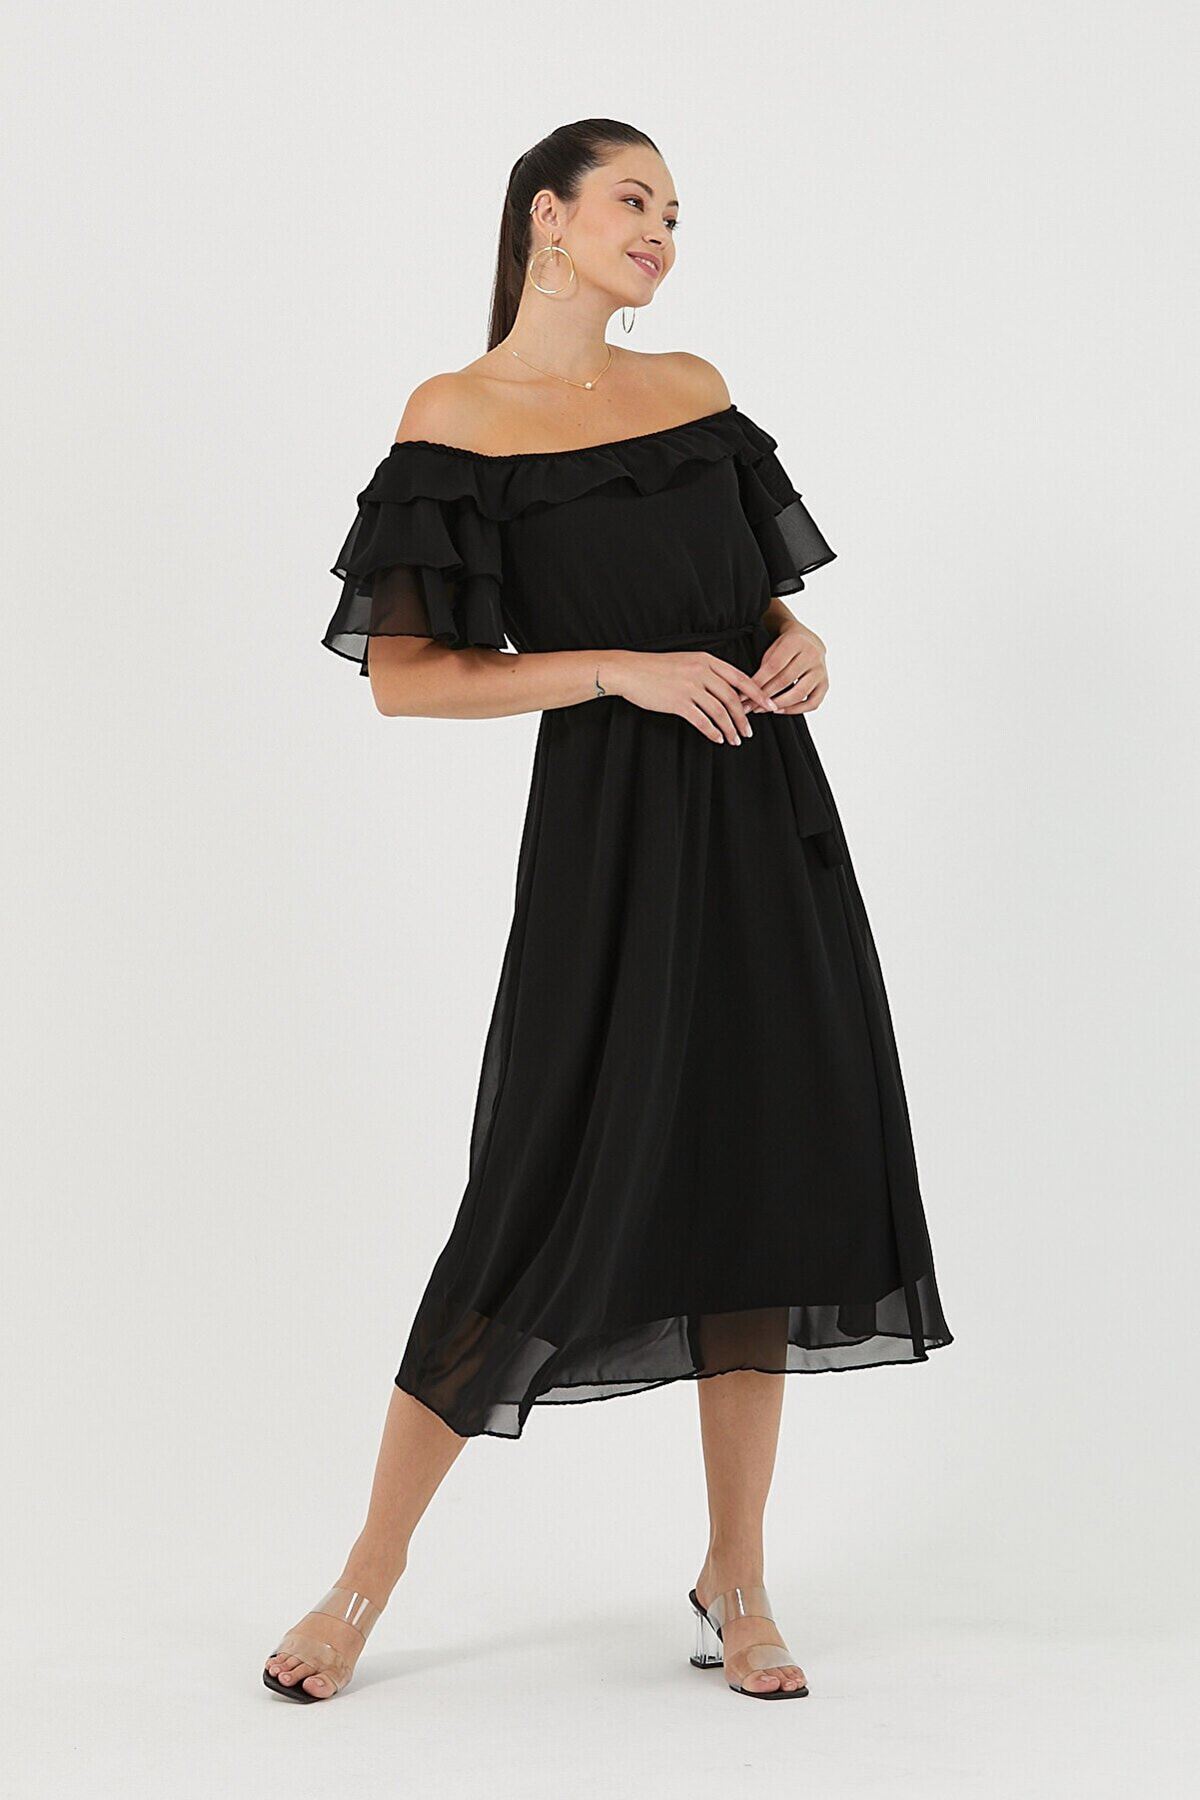  Kadın Carmen Yaka Şifon Siyah Elbise 2E-5017